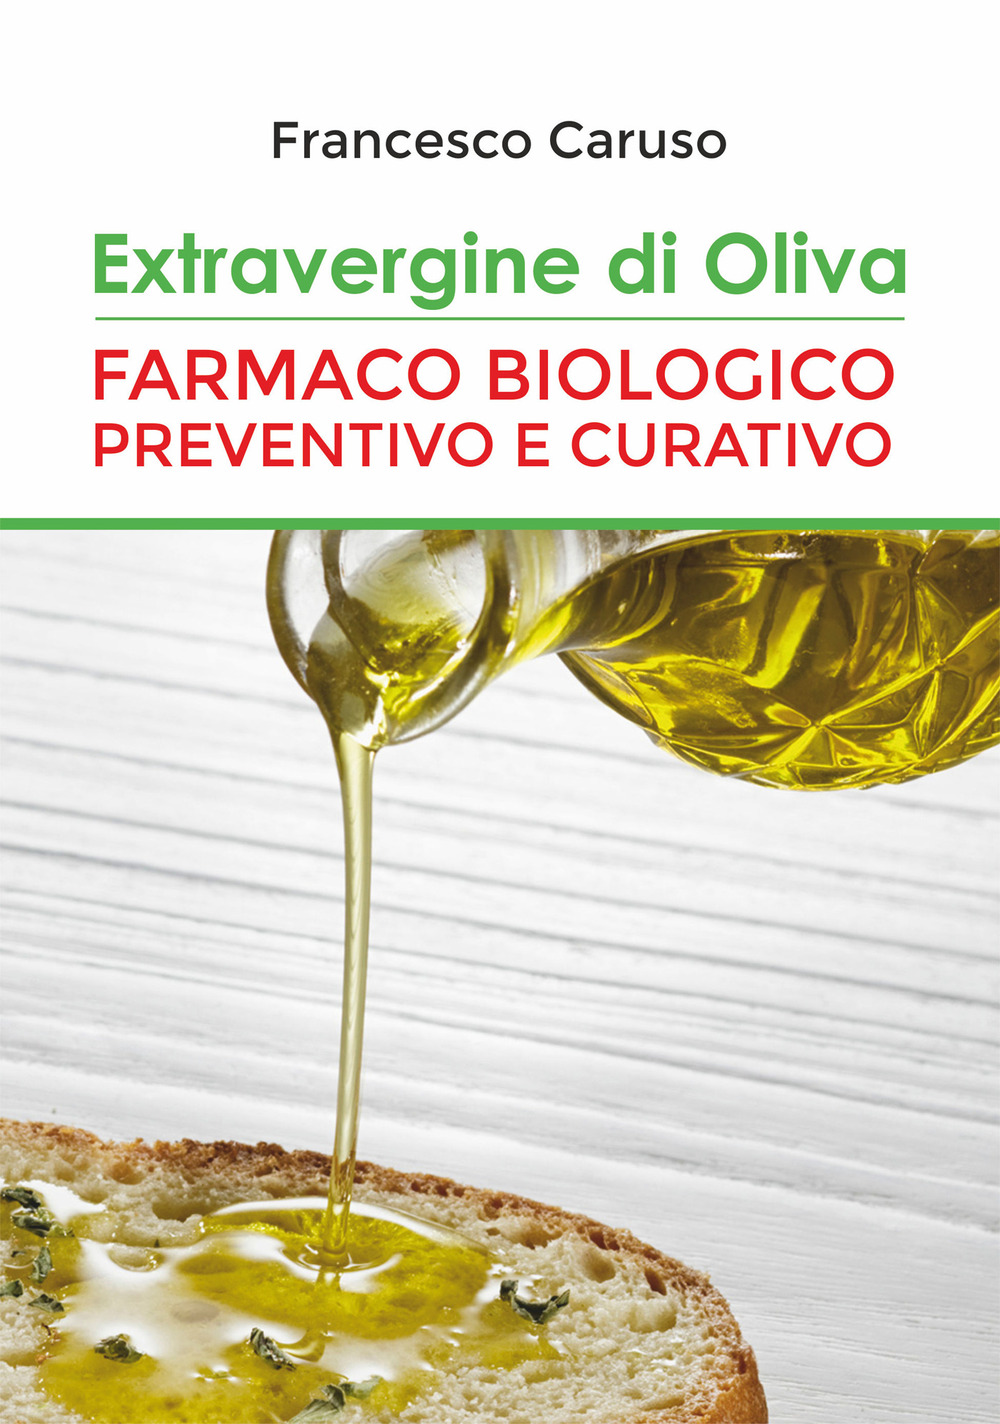 Extravergine d'oliva. Farmaco biologico preventivo e curativo